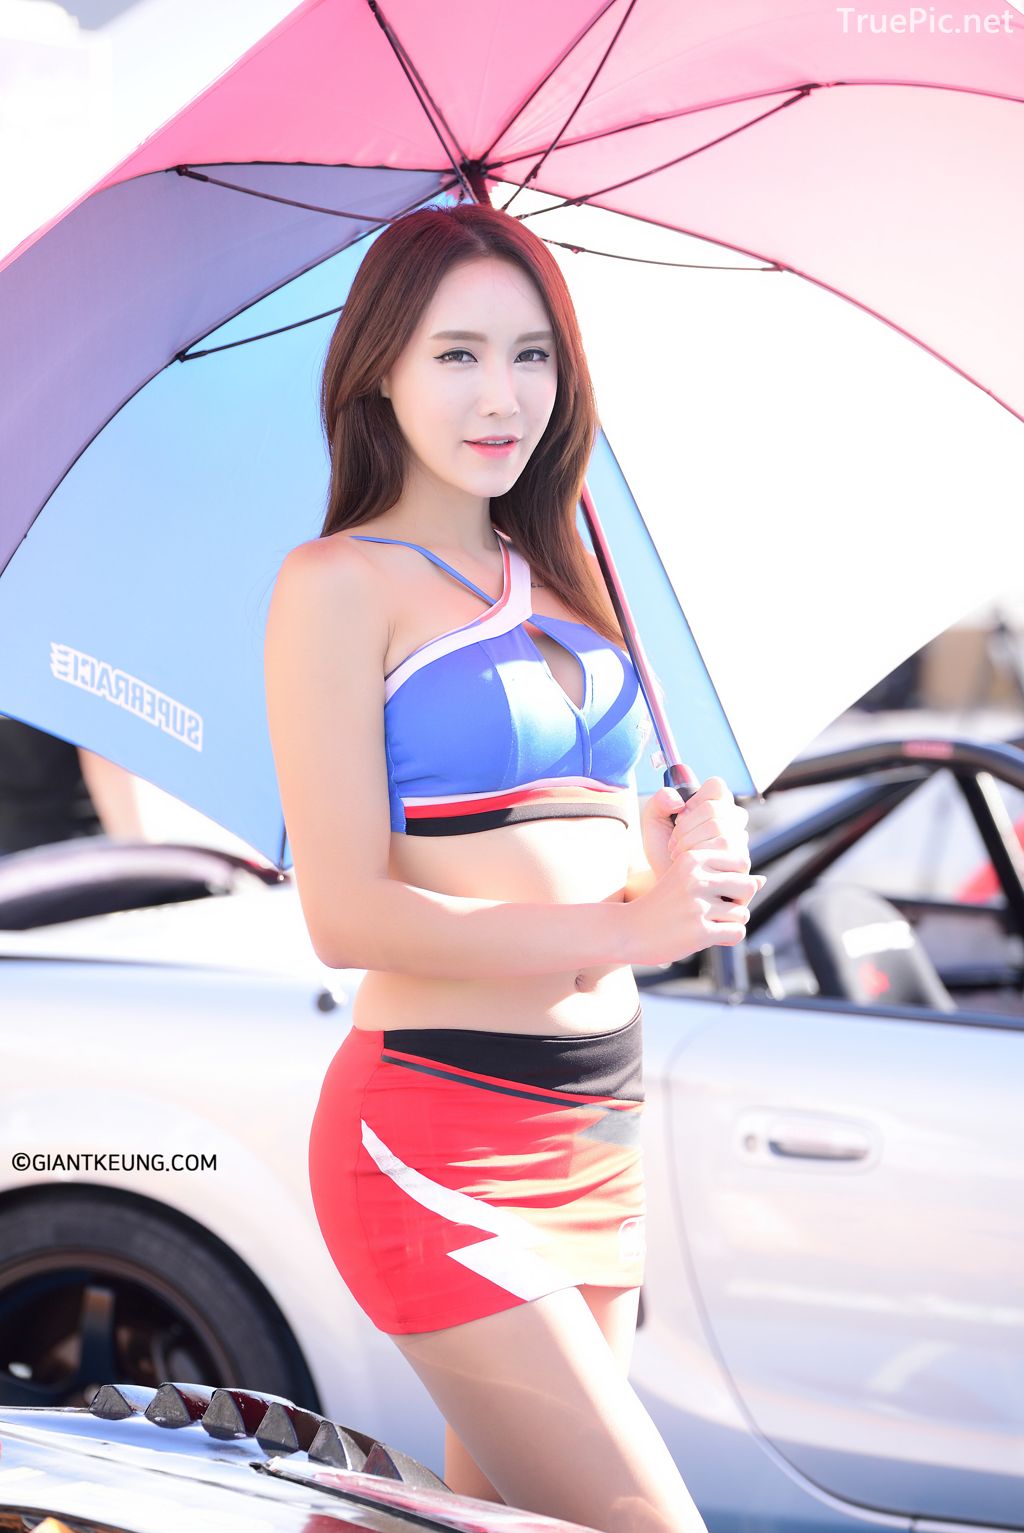 Image-Korean-Racing-Model-Lee-Soo-Yeon-Incheon-KoreaTuning-Festival-Show-TruePic.net- Picture-54